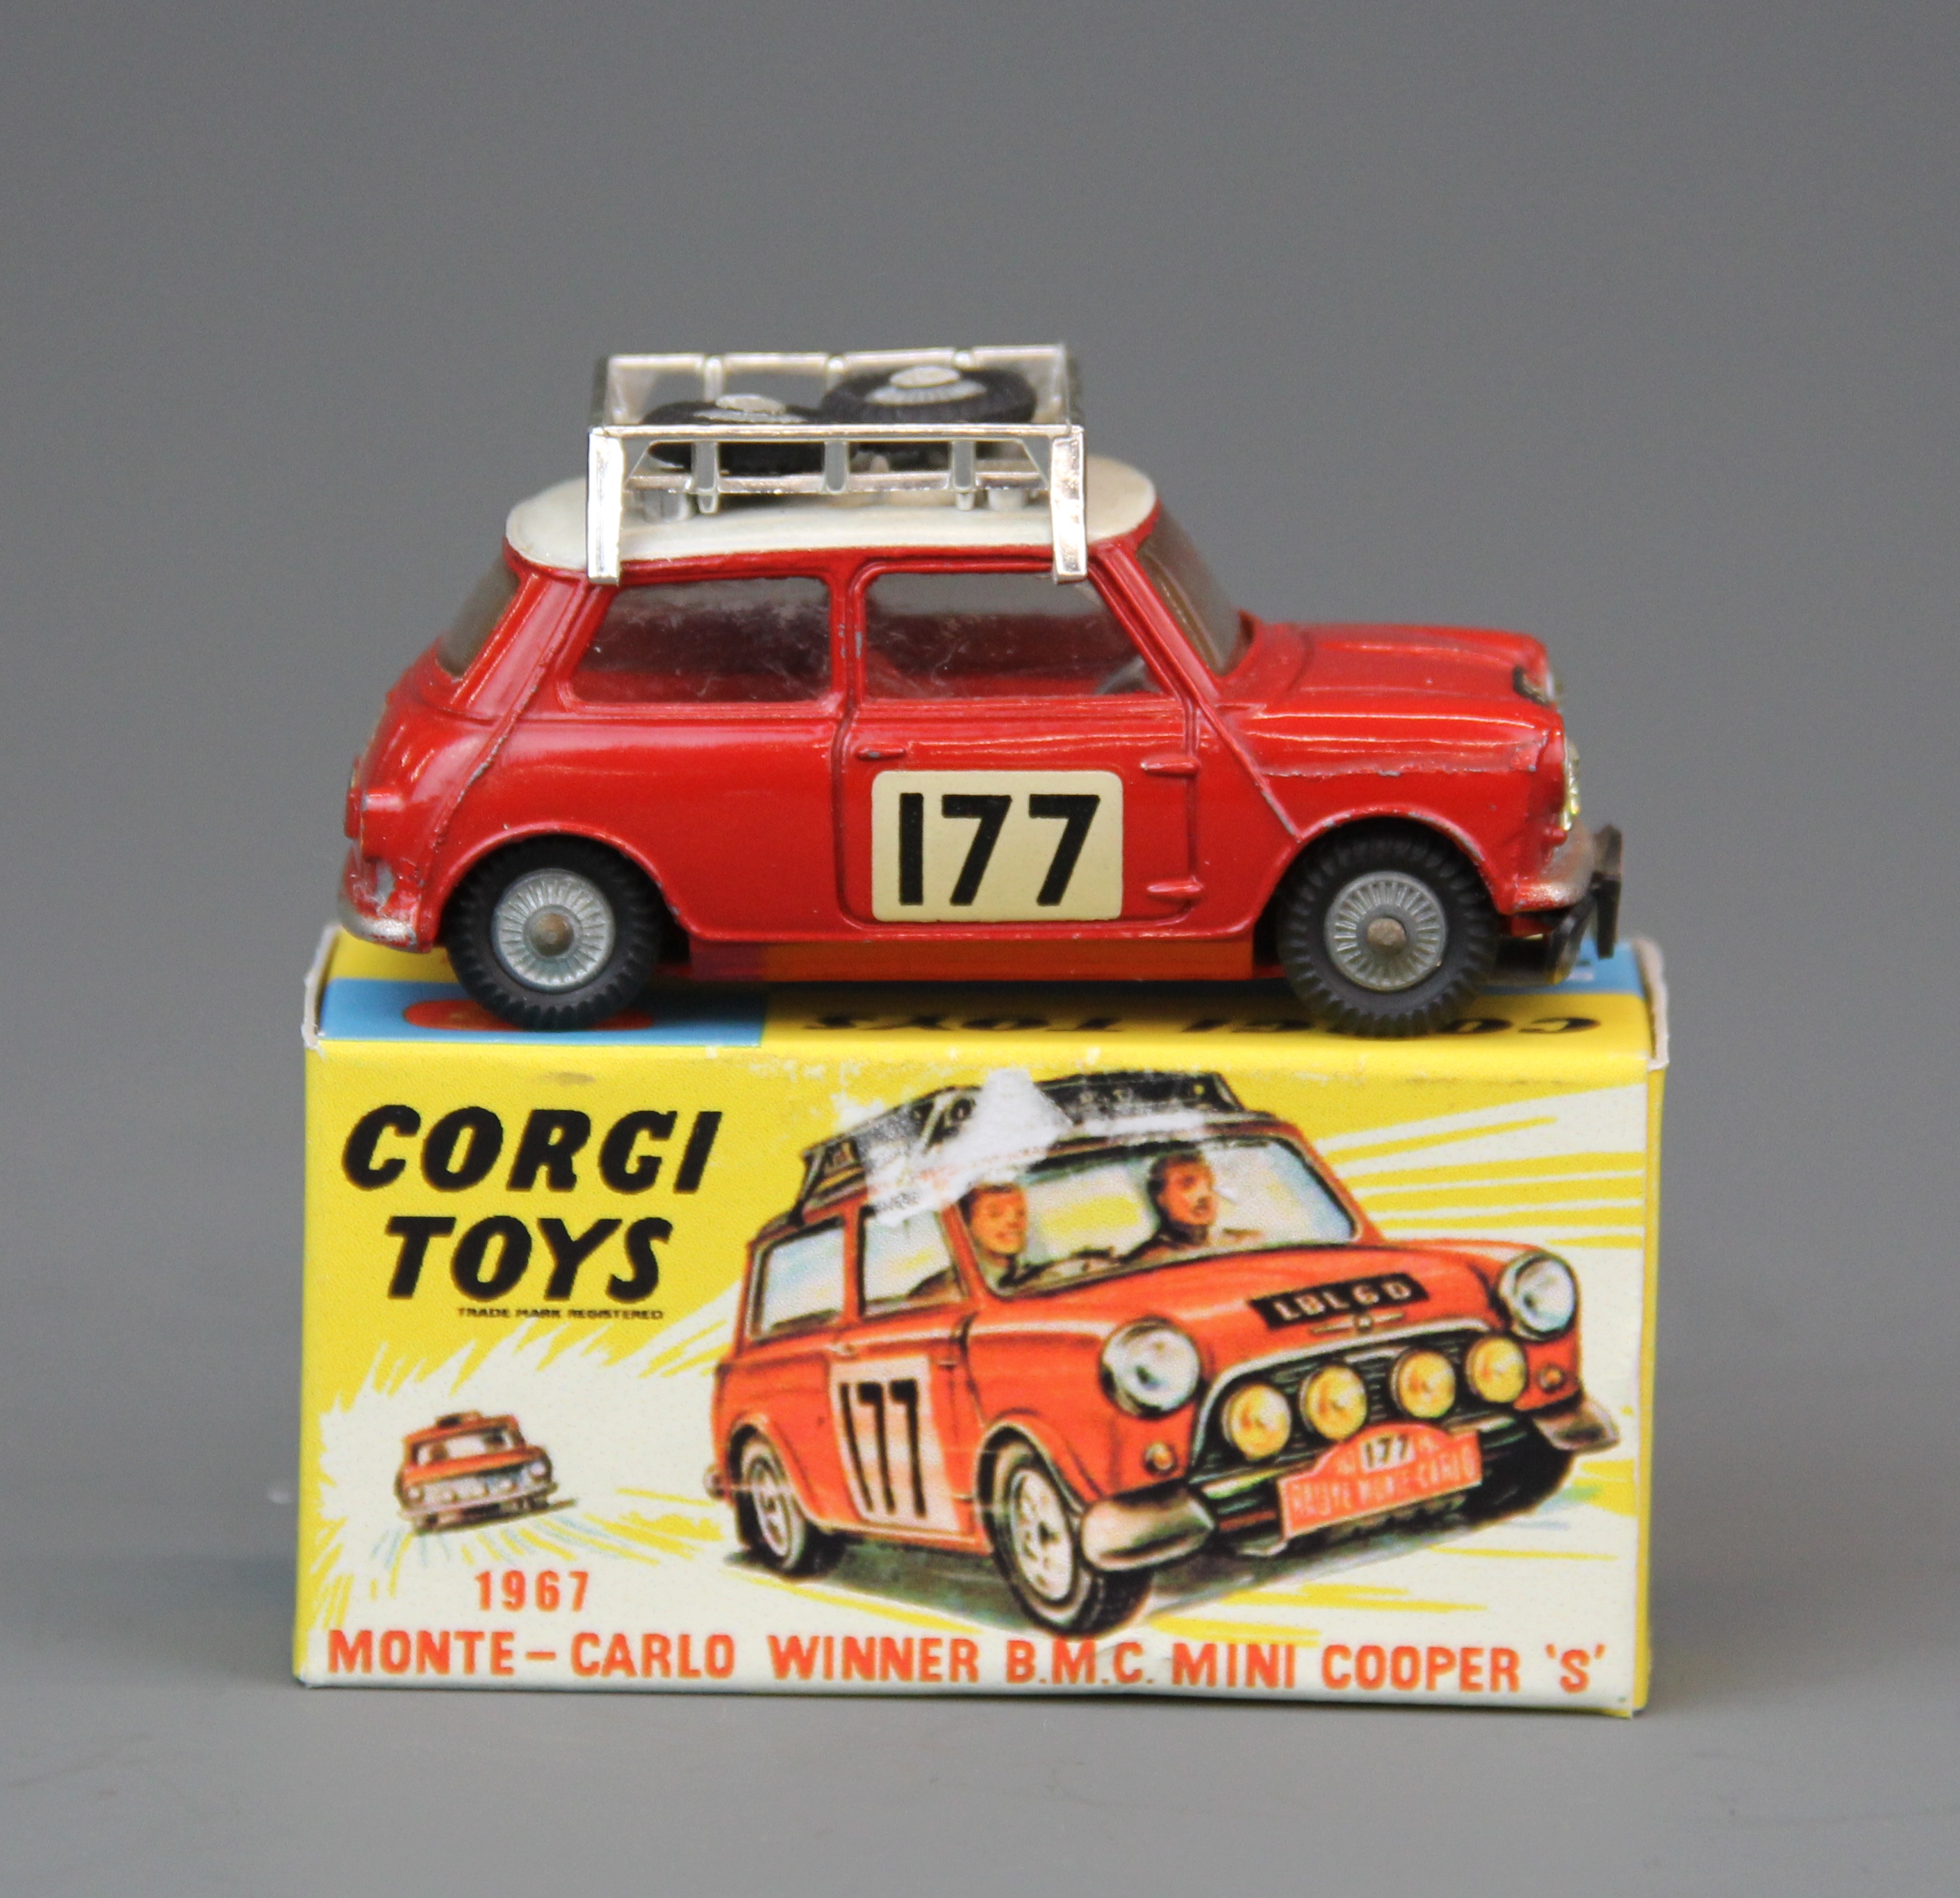 A Corgi toys 1967 Monte Carlo winner BMC Mini Cooper S with replacement box